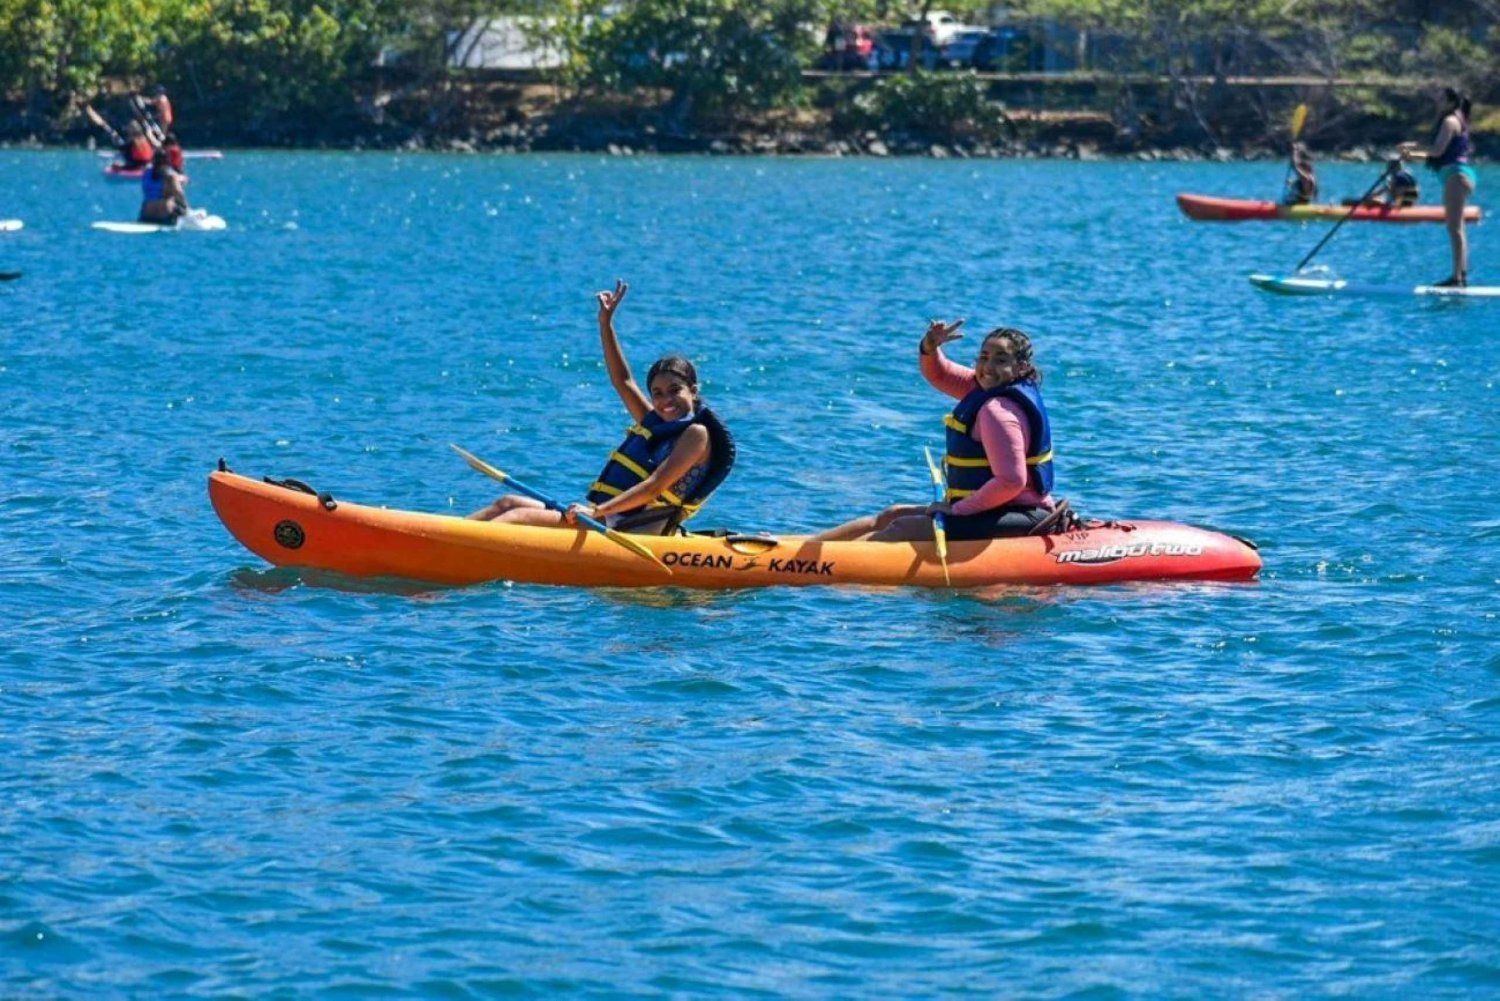 San Juan:Guidad tur i Condado Lagoon med kajak/paddelbåt